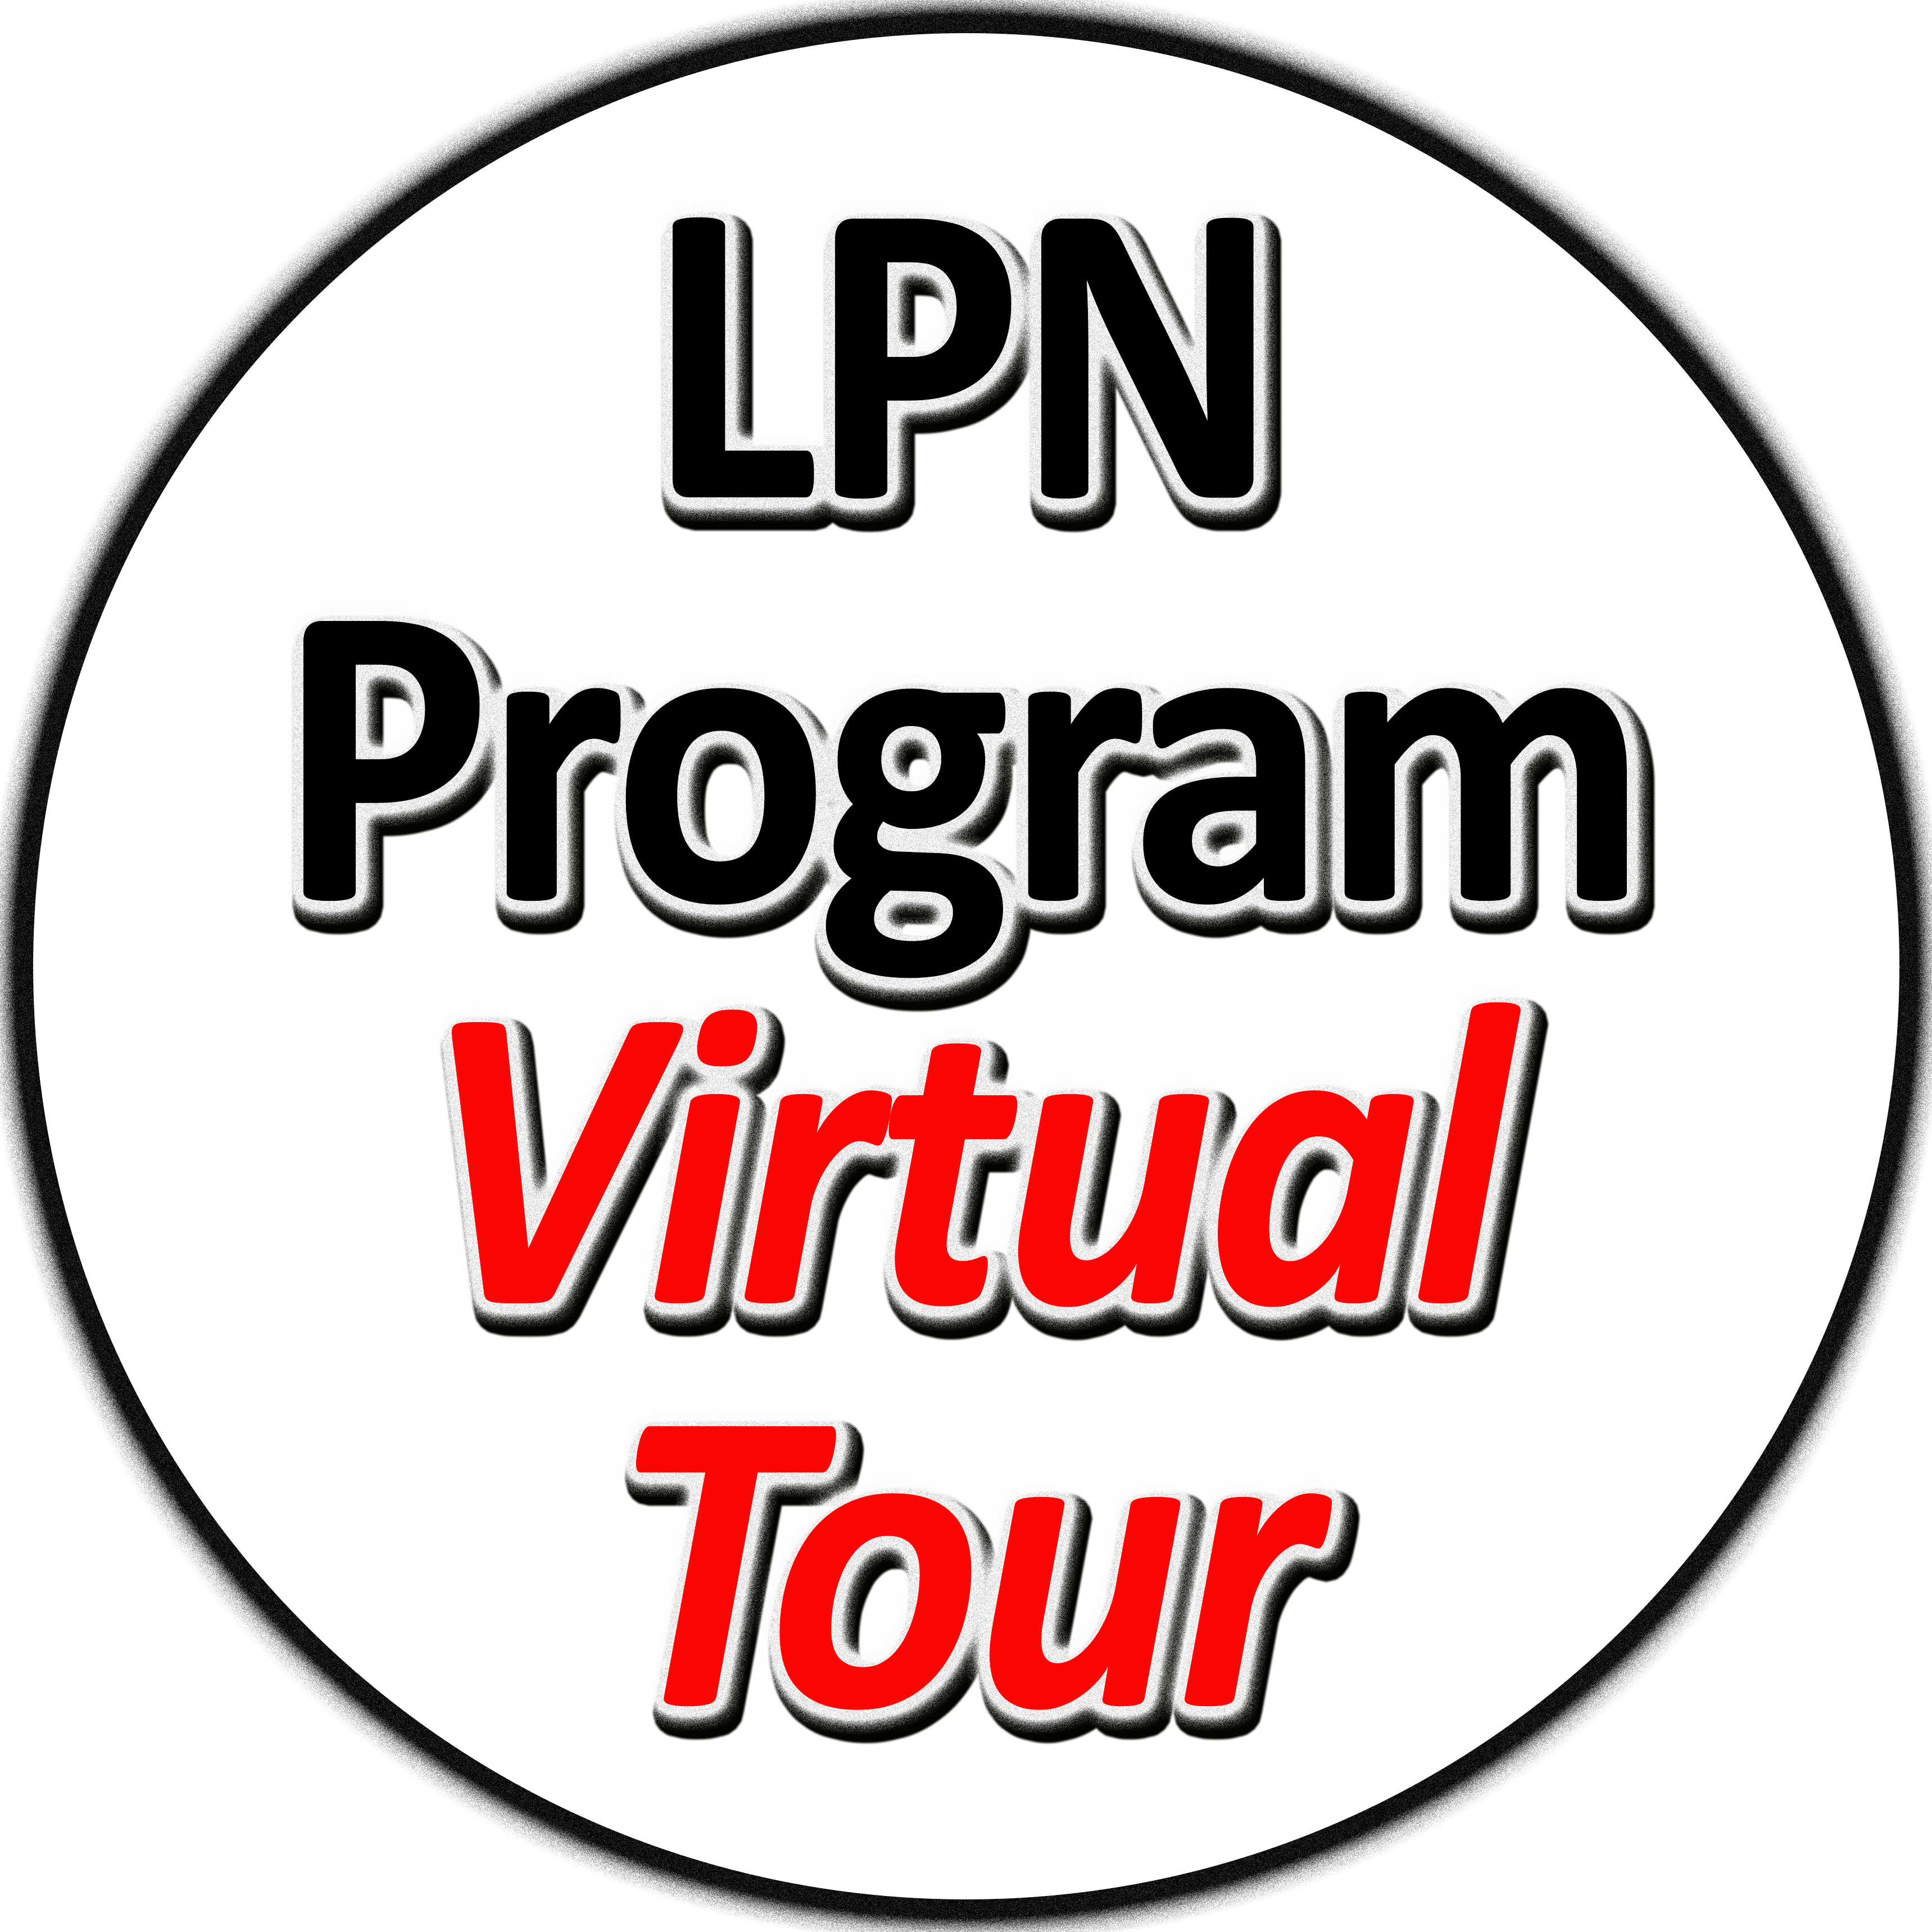 LPN Program Virtual Tour